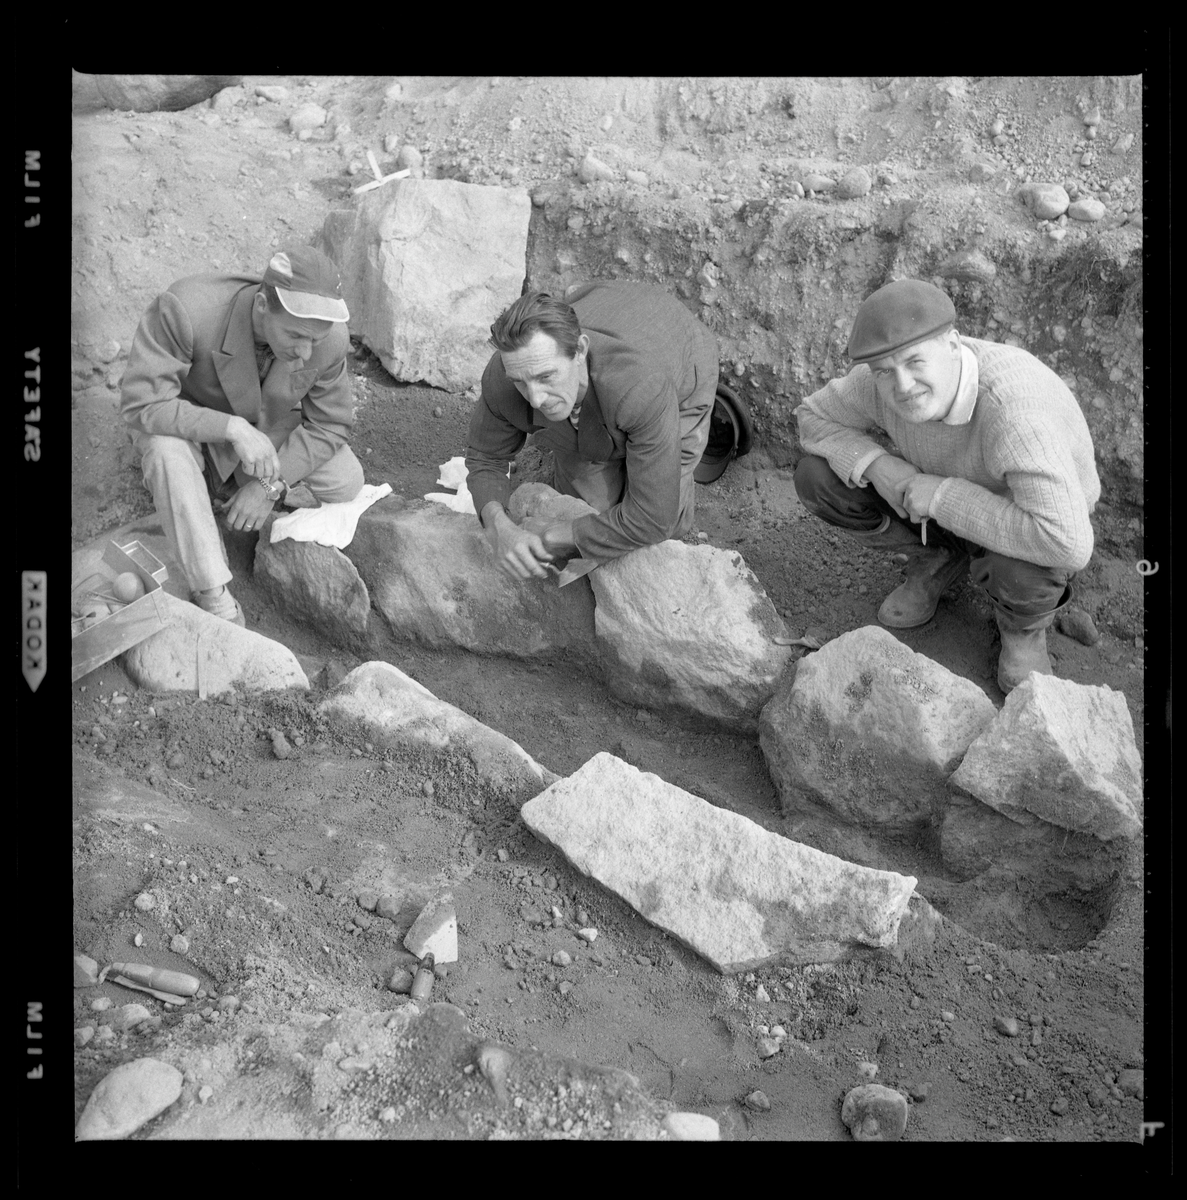 Svedvi sn Rallsta RAÄ 16 Arkeologisk undersökning utförd av Vlm / Henry Simonsson 1960-61.

Man från utgrävningen av stenkistan, anläggning 86.